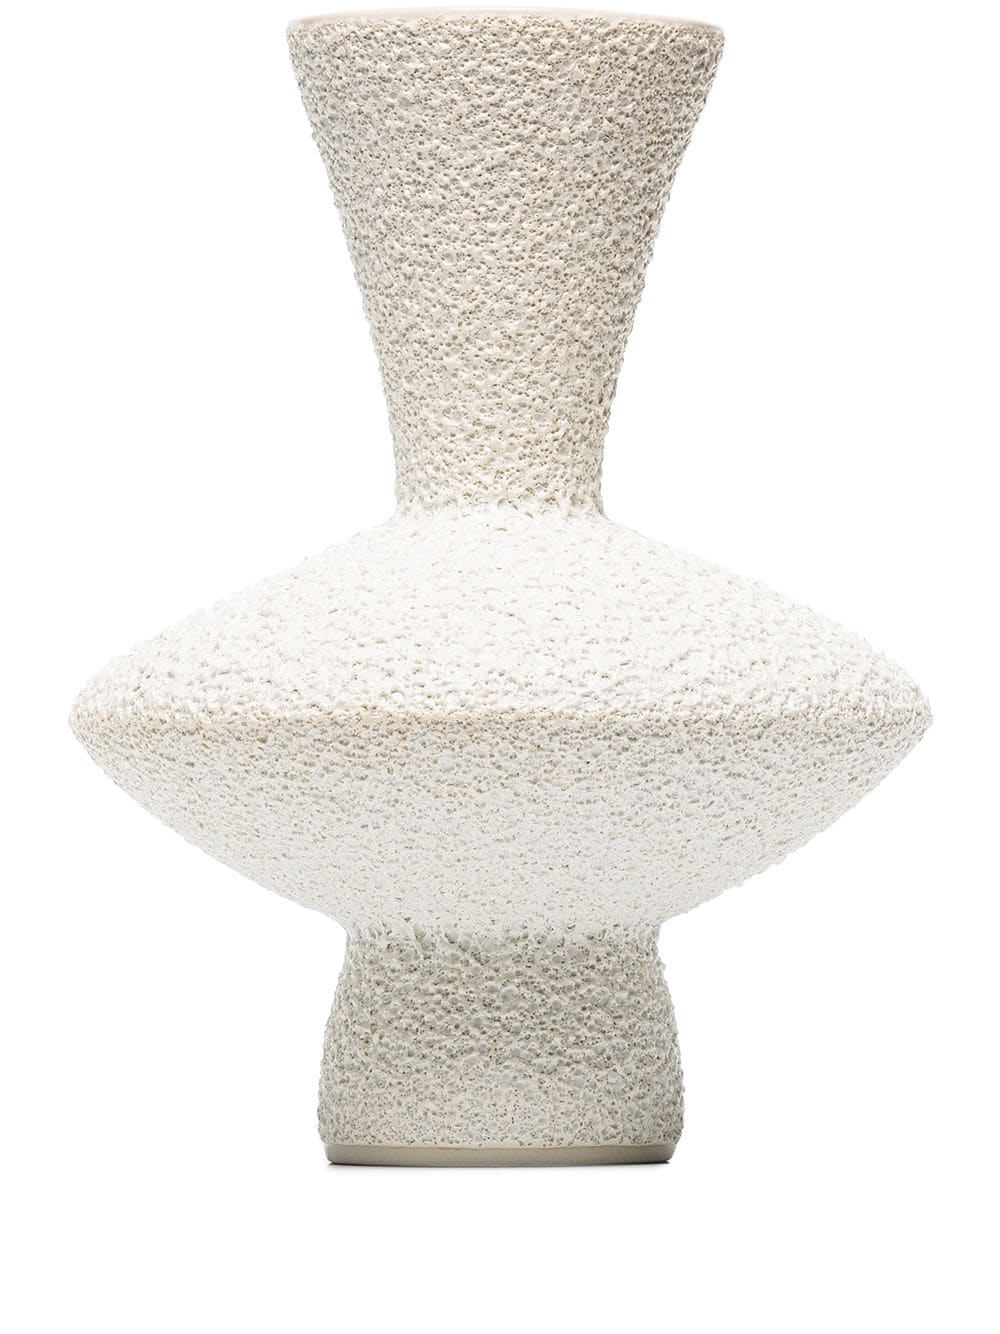 Керамическая ваза Marloe Marloe 24 676 руб.